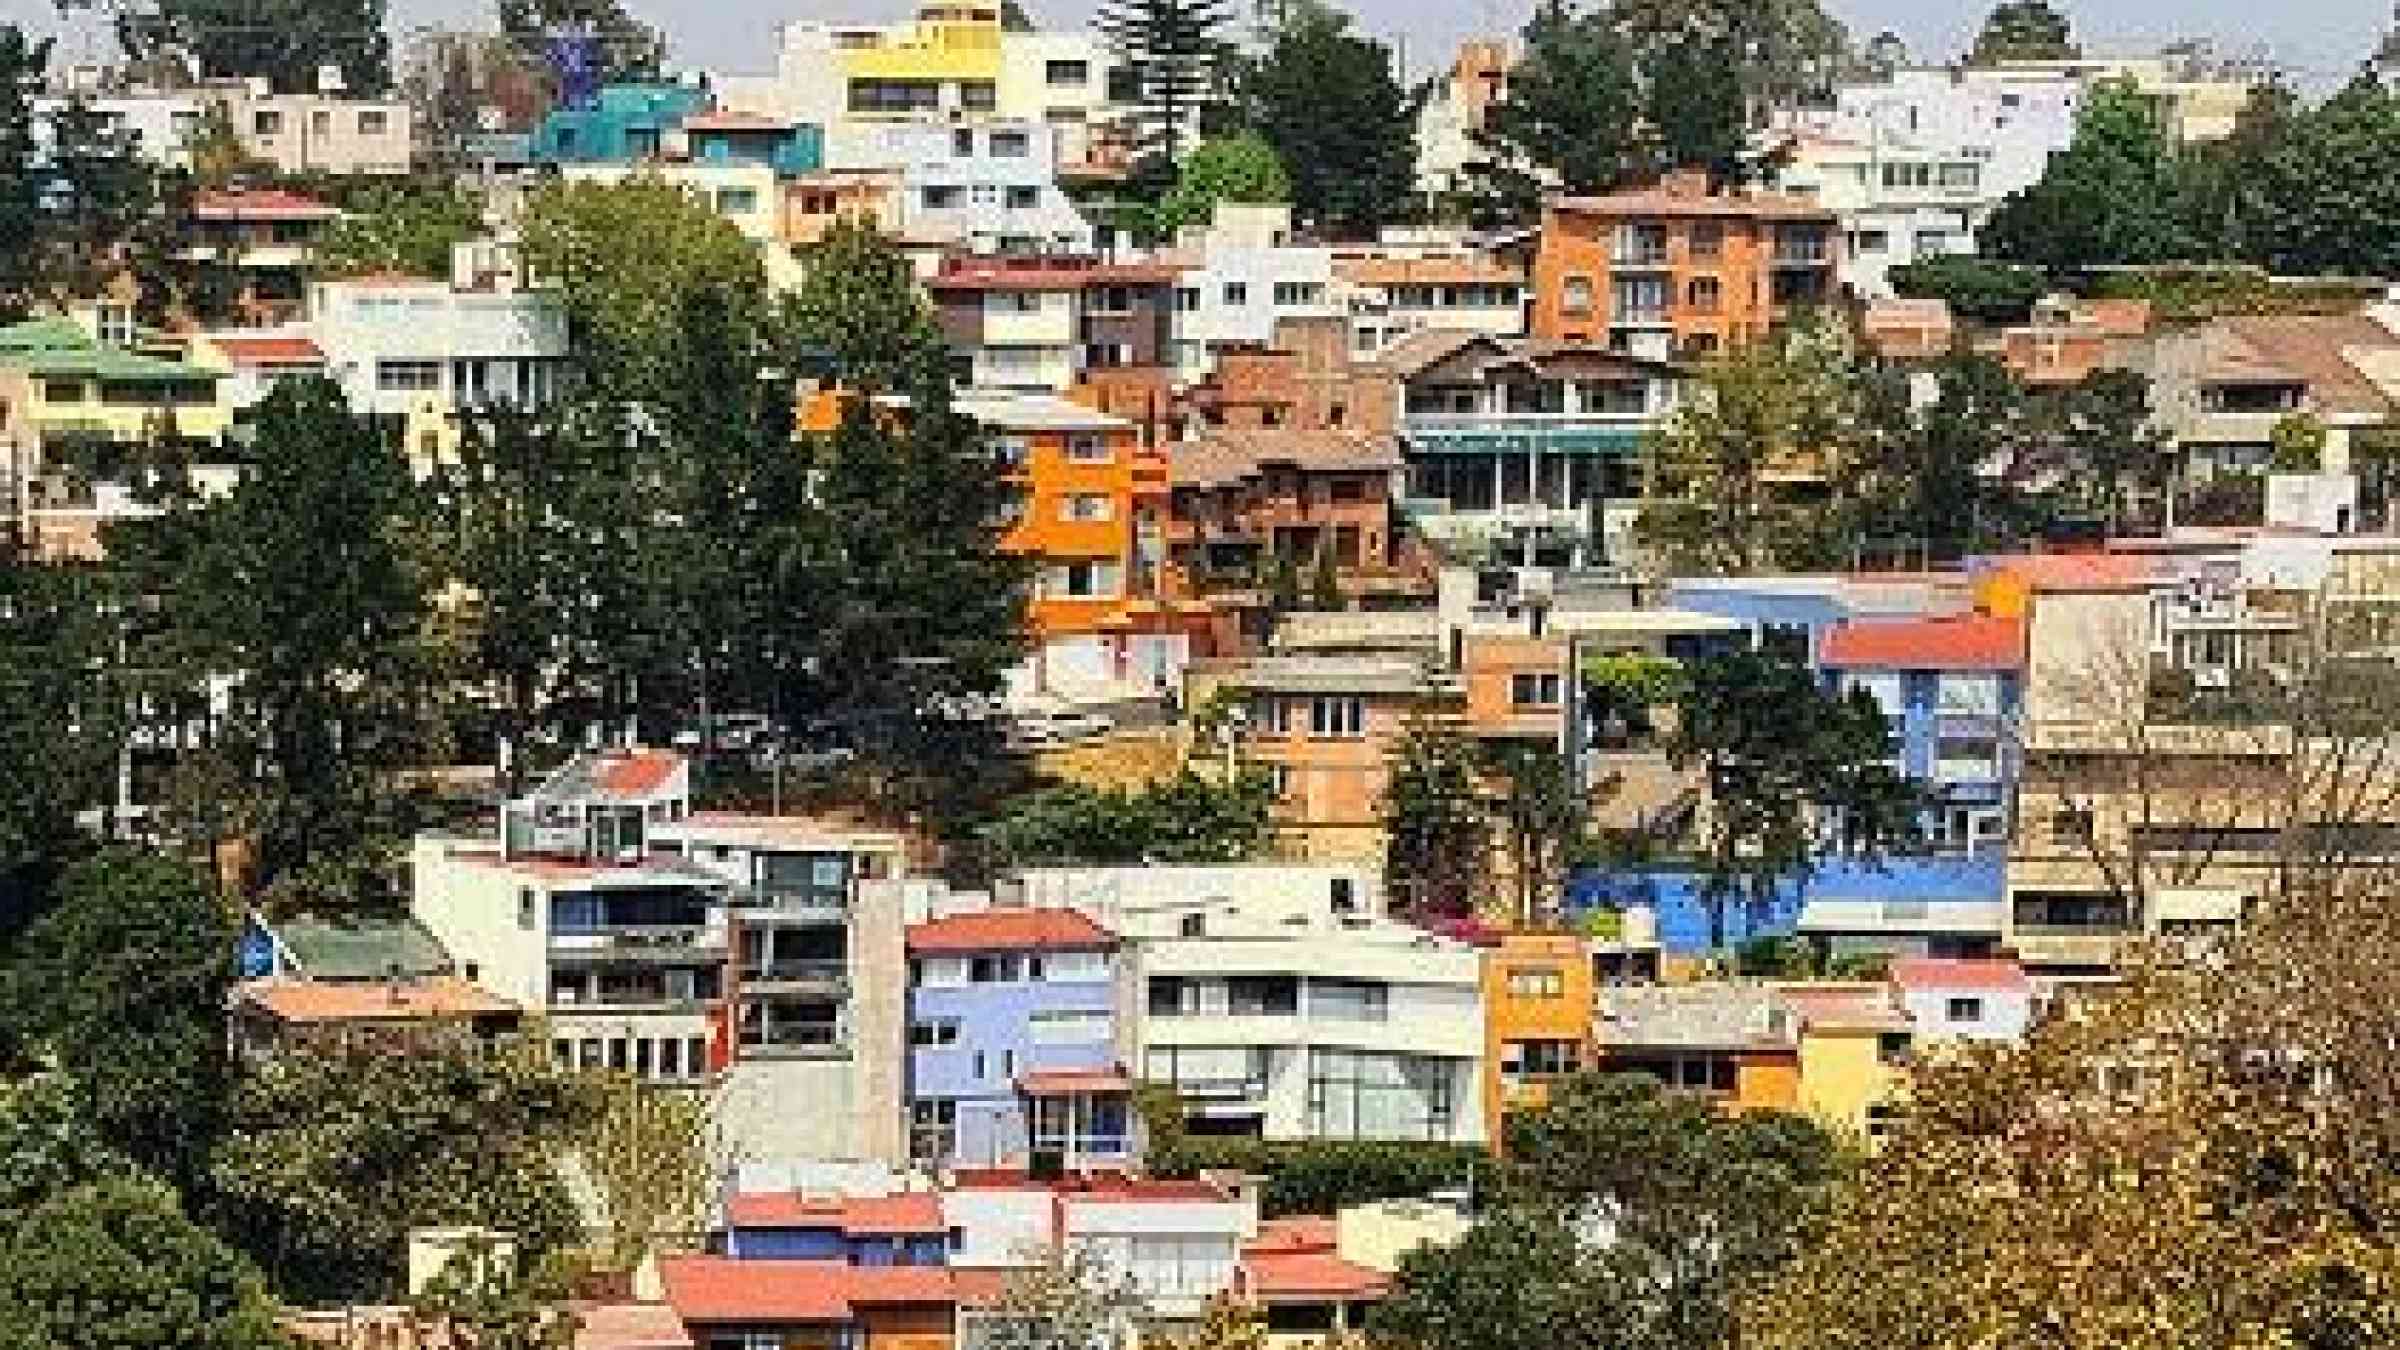 A residential area of Mexico City, Distrito Federal (Photo: VV Nincic)